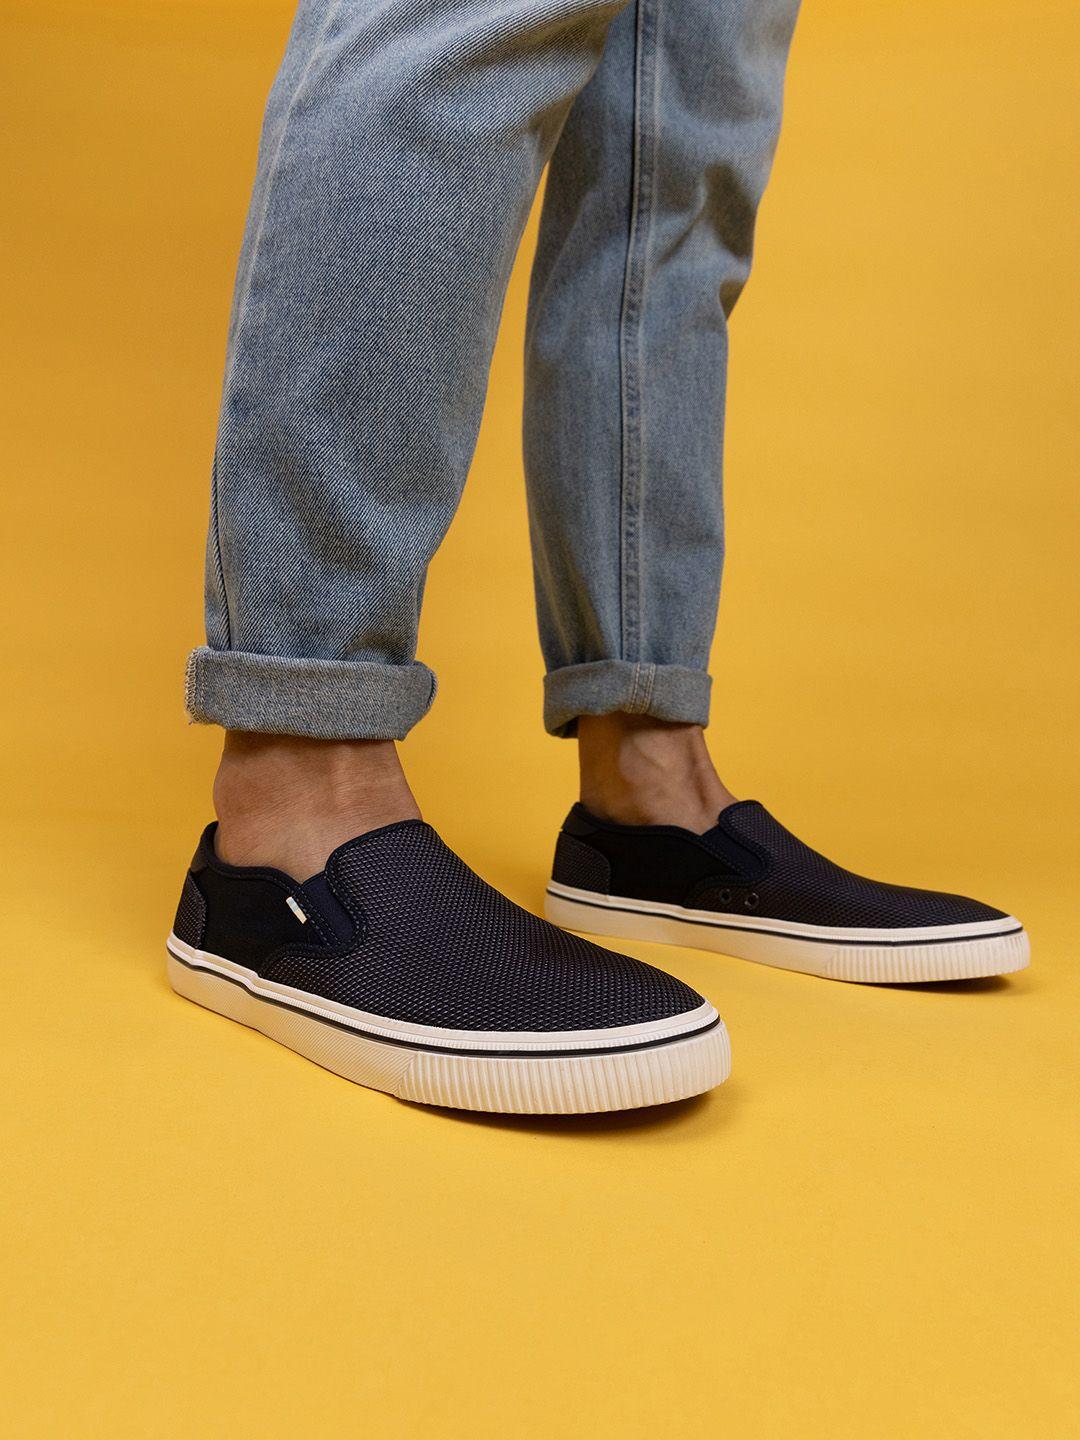 toms-men-navy-blue-printed-slip-on-sneakers